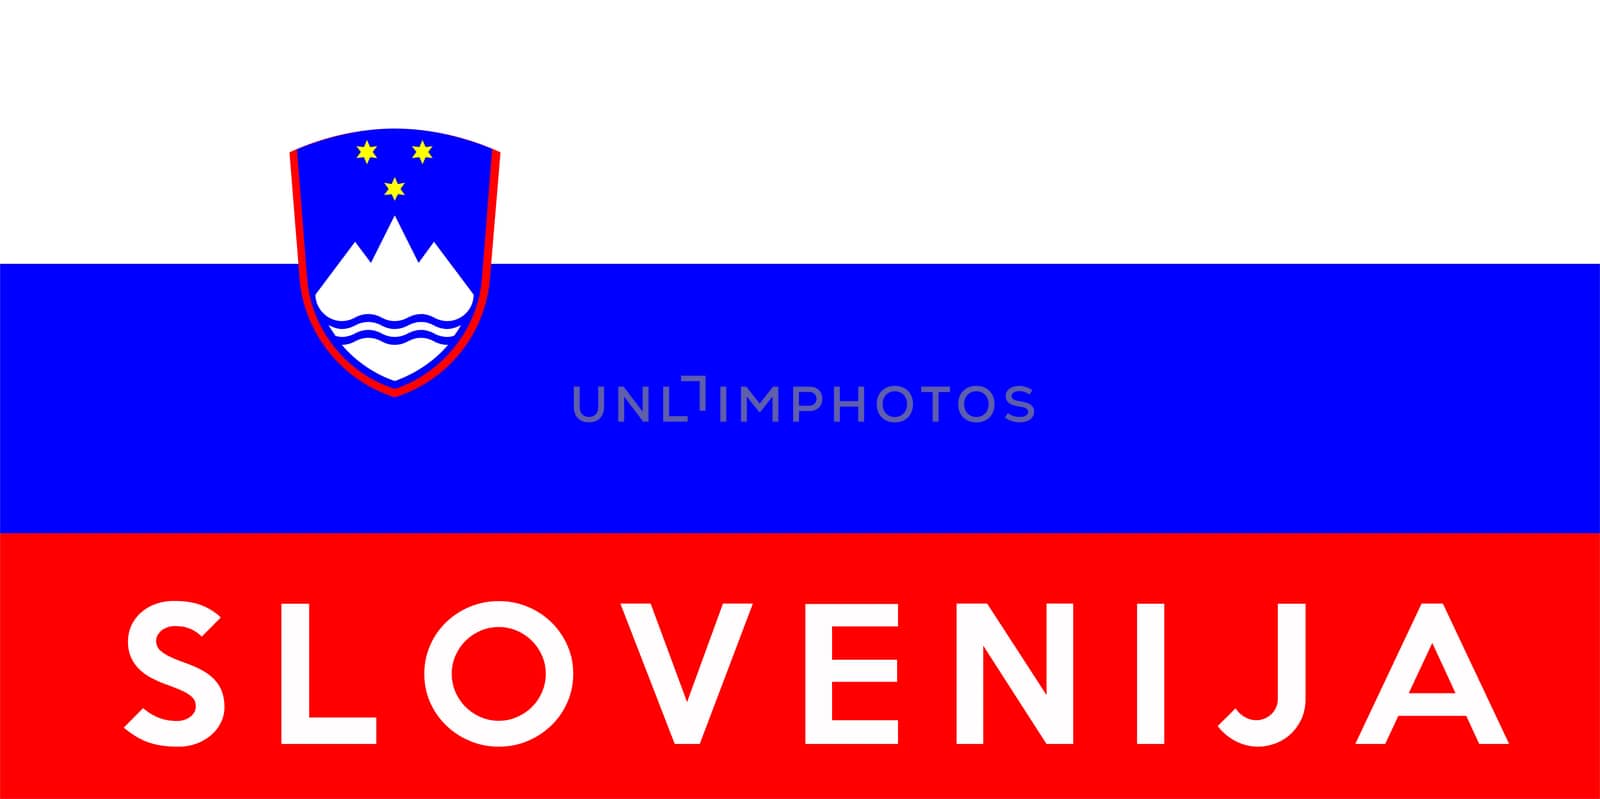 flag of Slovenia by tony4urban